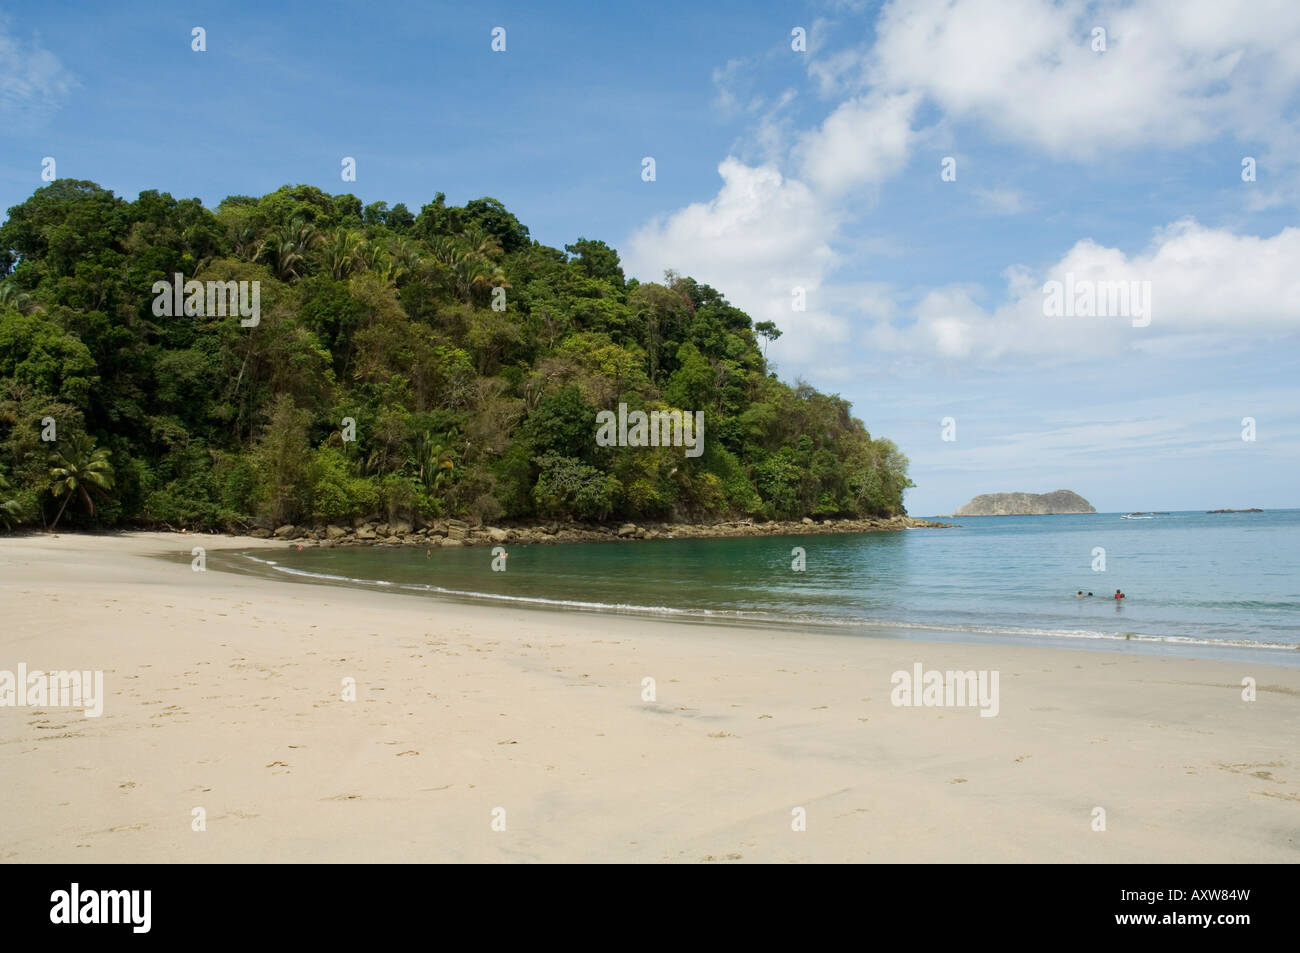 Beach at Manuel Antonio Nature Reseve, Maueil Antonio, Costa Rica Stock Photo